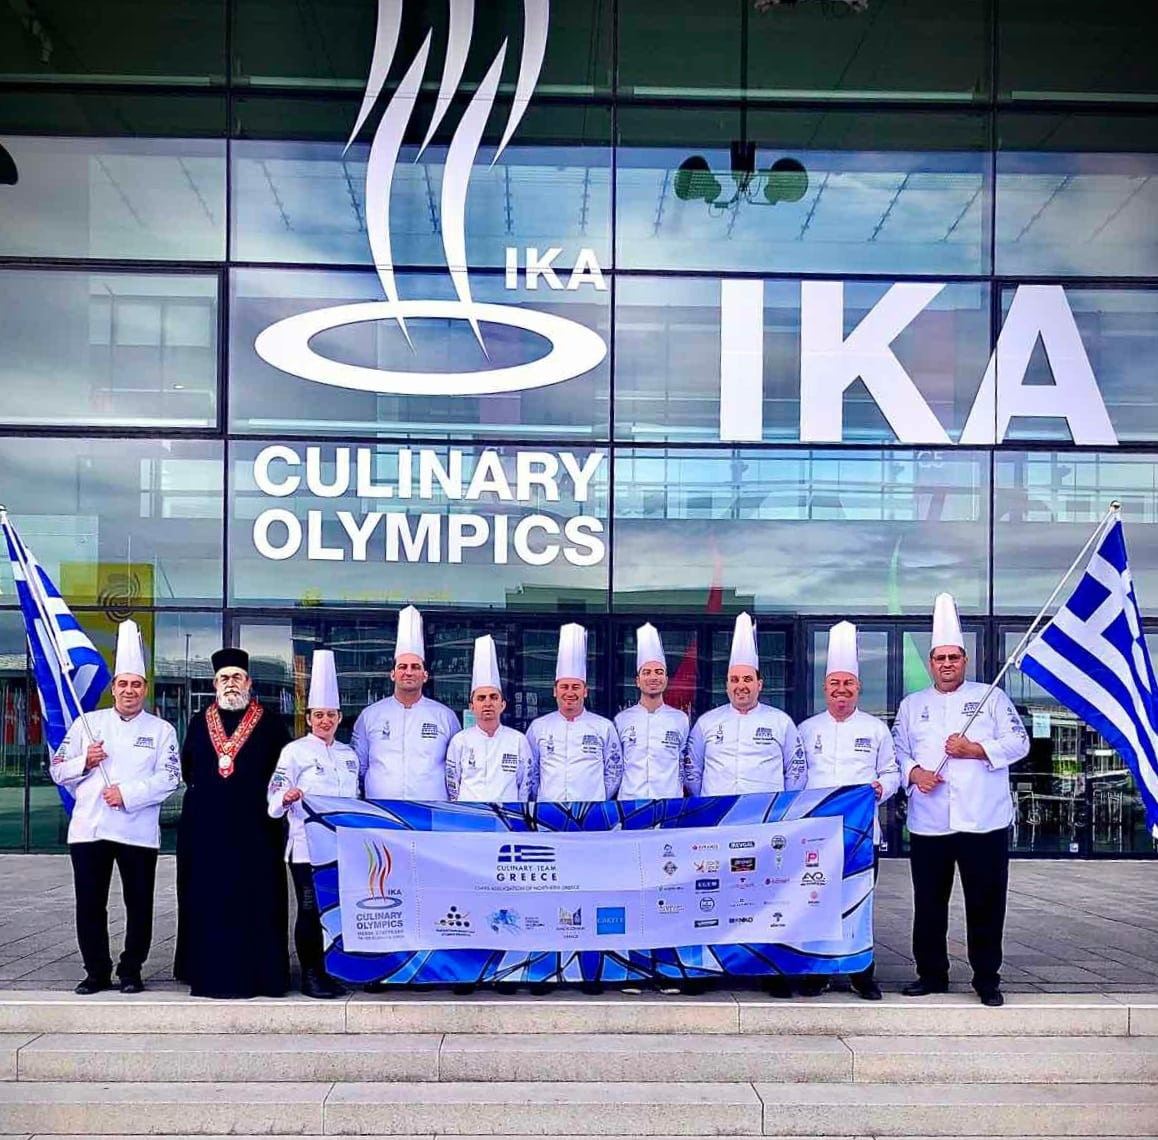 ολυμπιακοί αγώνες μαγειρικής ΙΚΑ/Culinary Olympics 2020 Γερμανία Στουτγκαργη χάλκινο μετάλλιο Λέσχη Αρχιμαγείρων Βορείου Ελλάδος